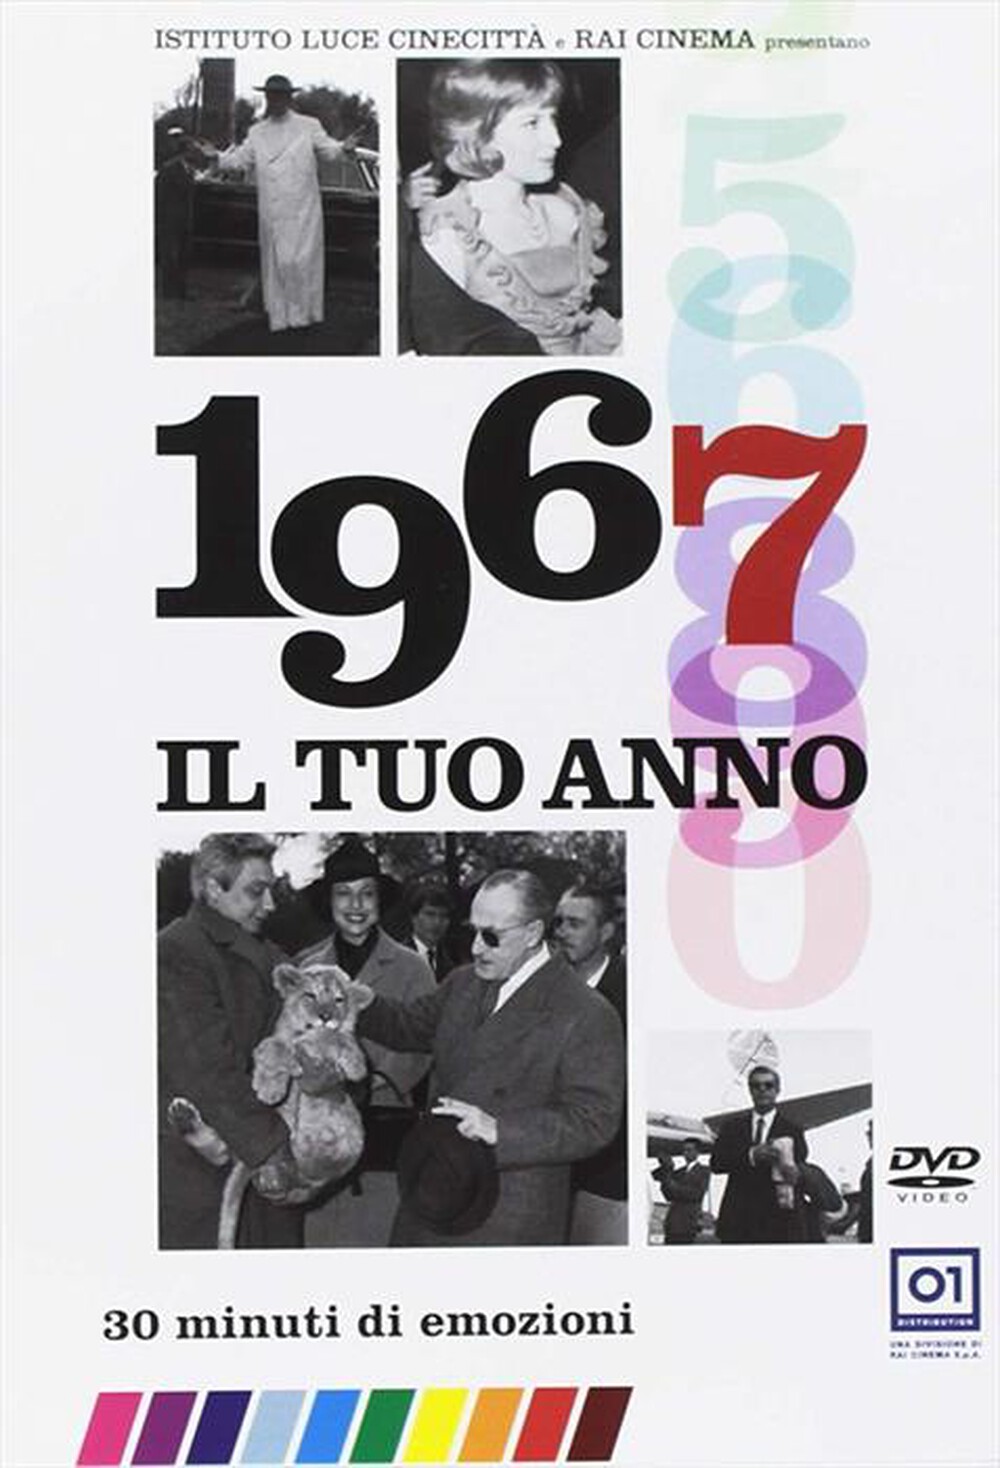 "01 DISTRIBUTION - Tuo Anno (Il) - 1967 (Nuova Edizione)"